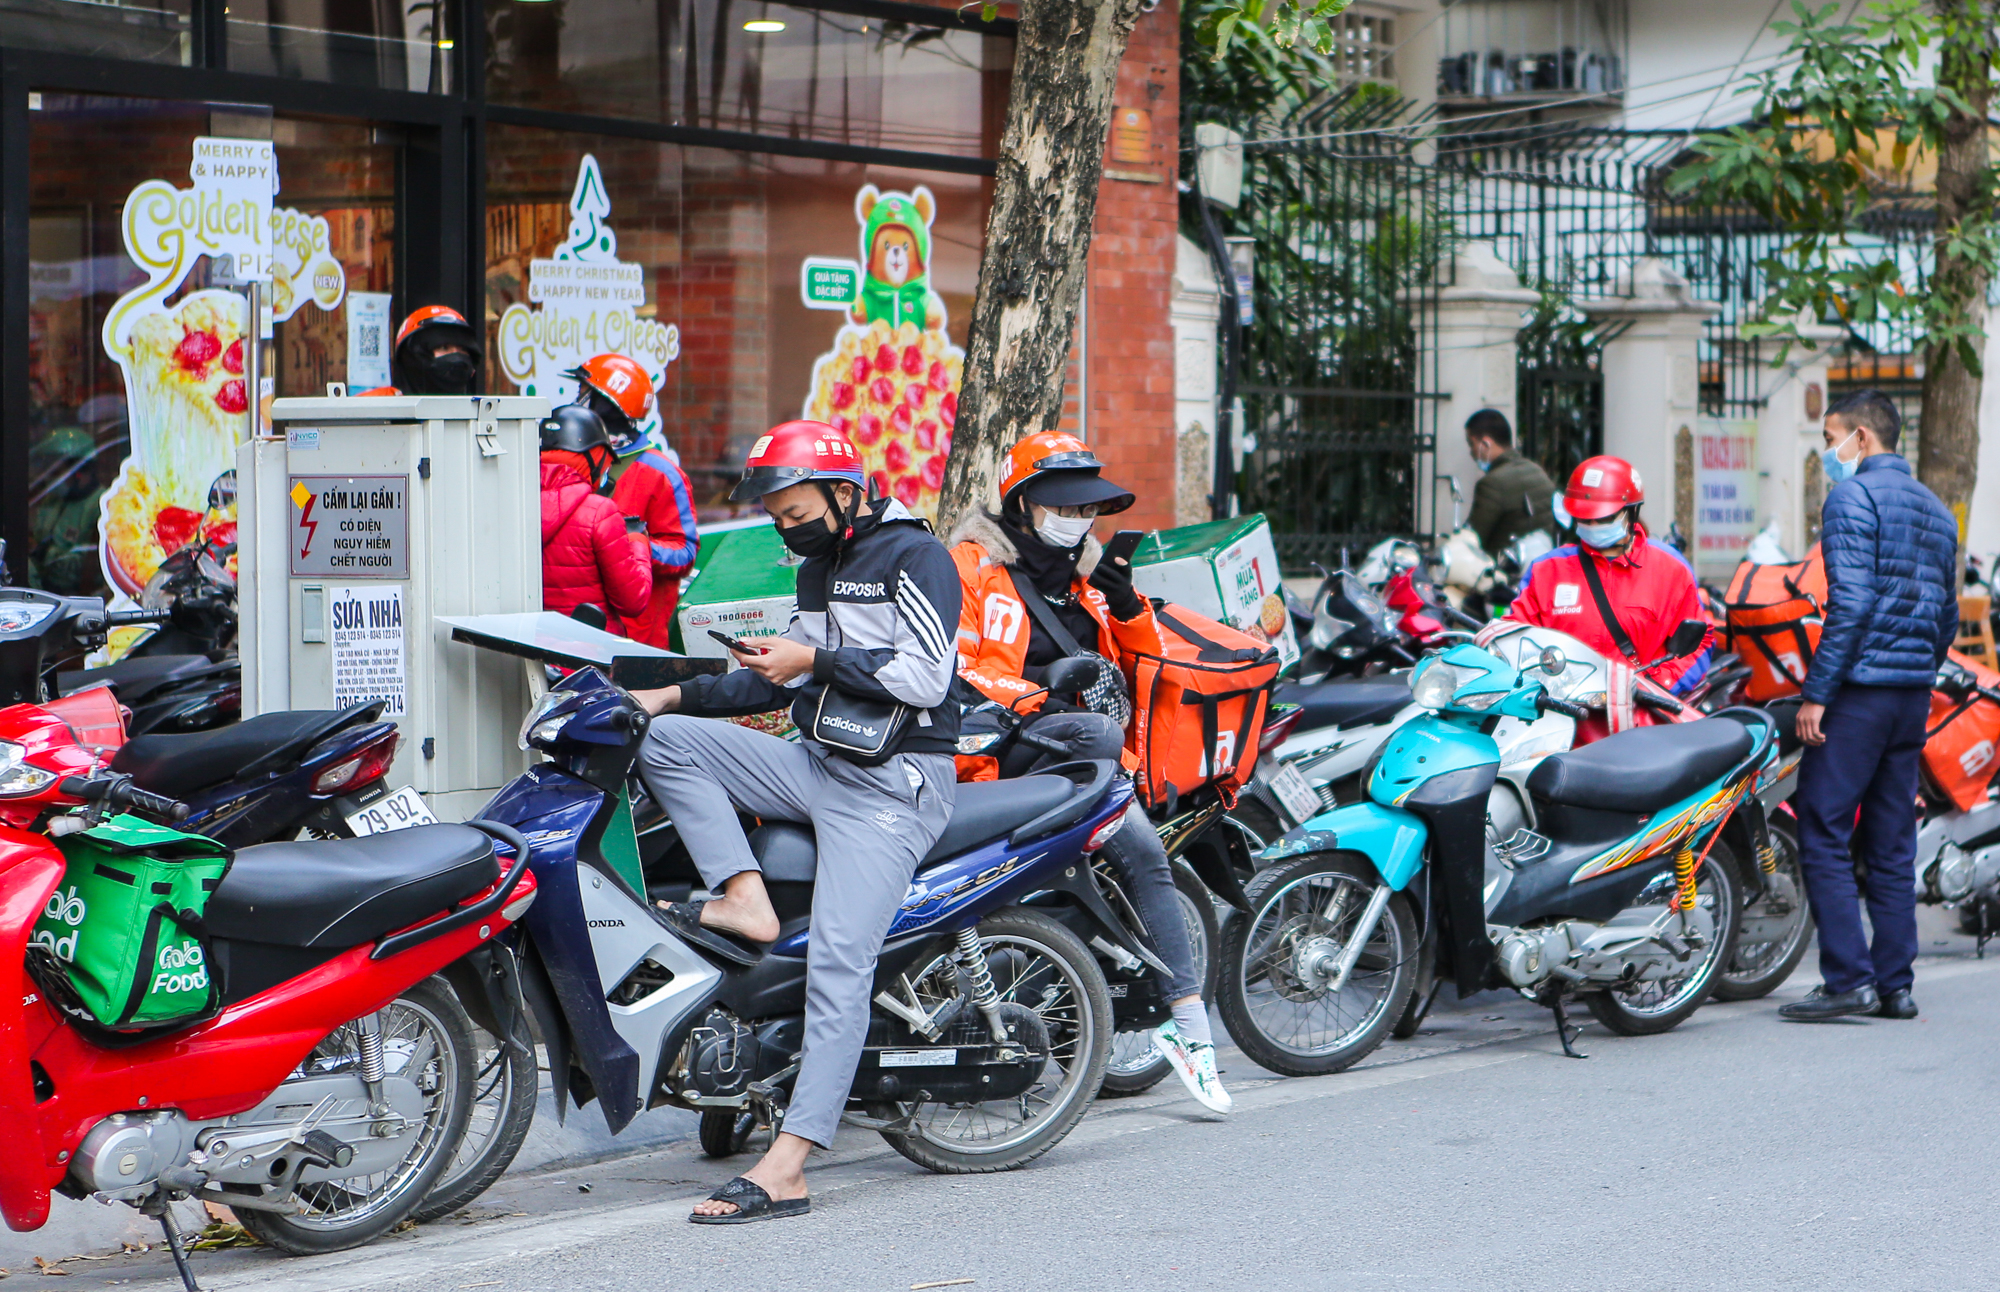 CLIP: Thêm một quận của Hà Nội cho phép các quán ăn chỉ bán hàng mang về - Ảnh 10.